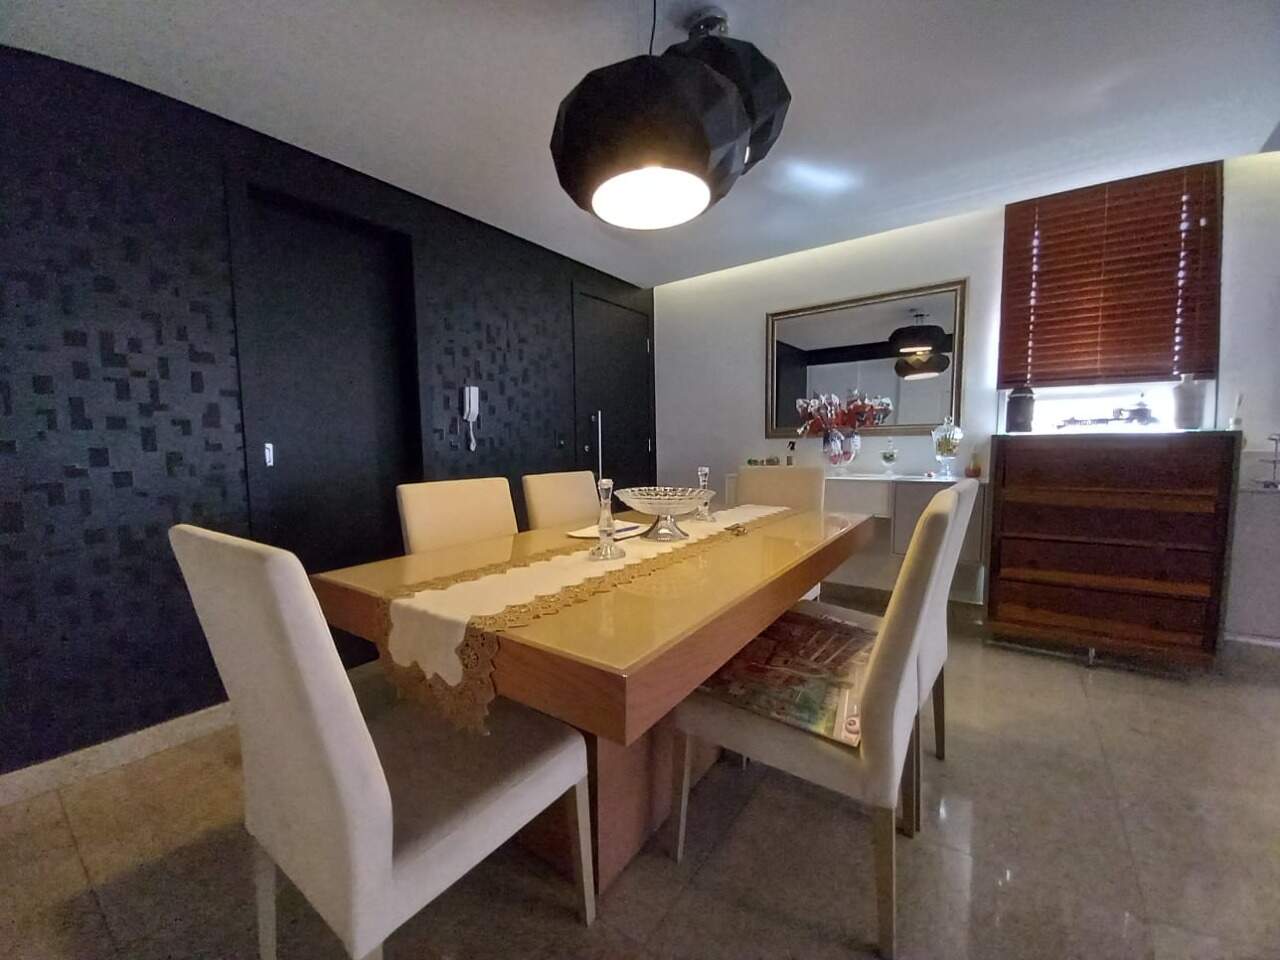 Imagem do imóvel Apartamento para aluguel, 4 quartos, 1 suíte, 3 vagas, Buritis - Belo Horizonte/MG